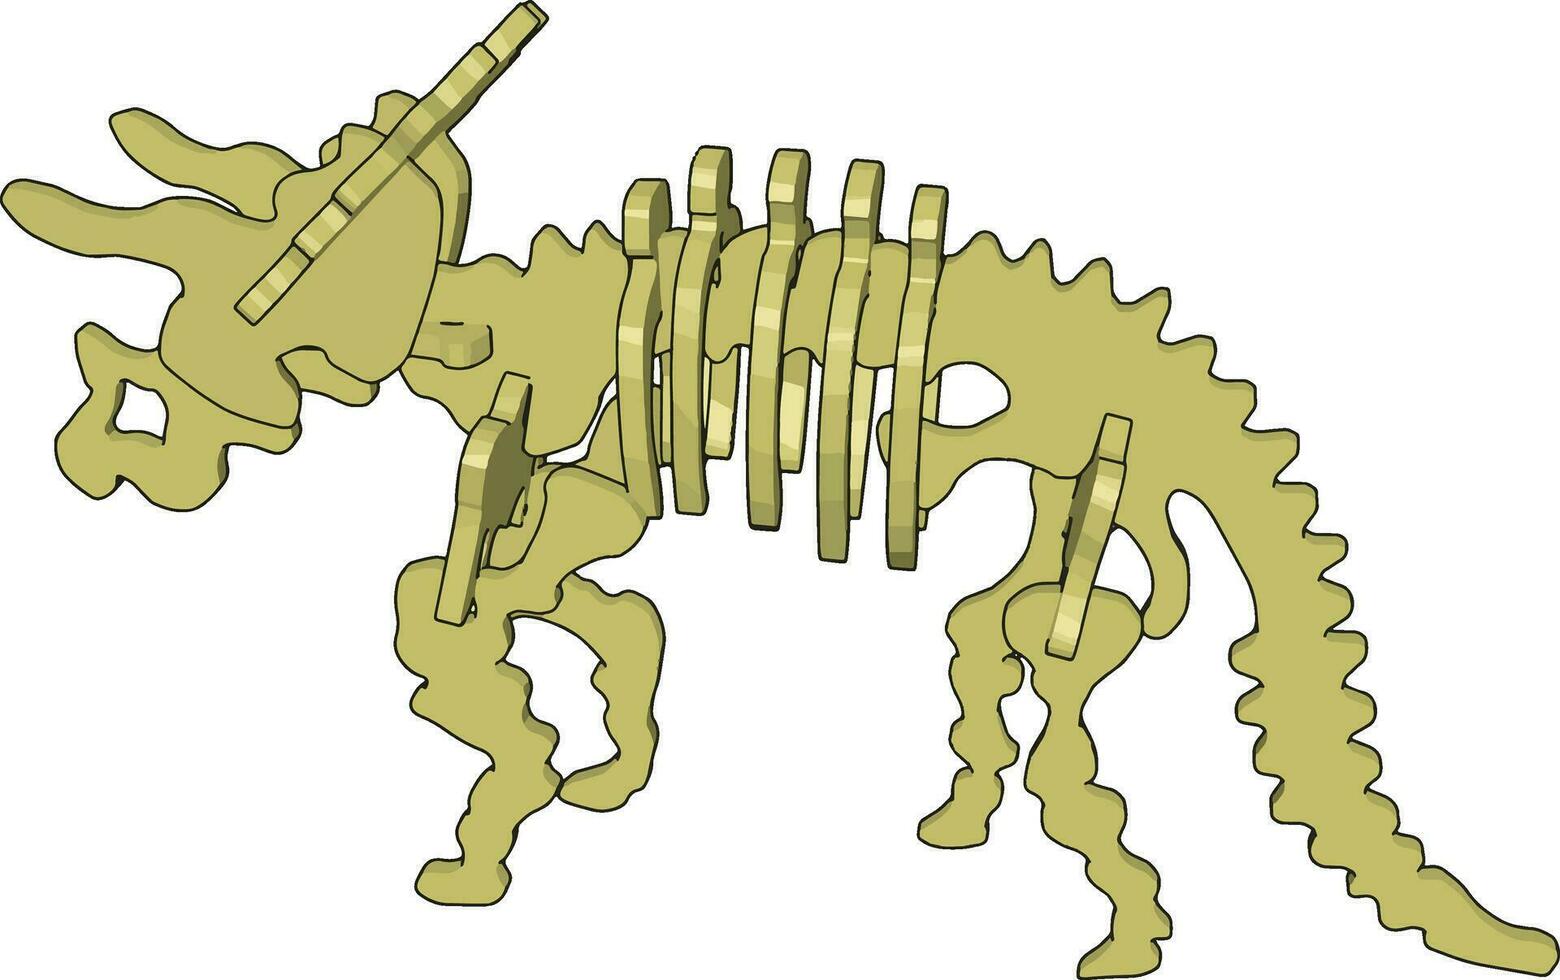 Esqueleto de dinosaurio 3d, ilustración, vector sobre fondo blanco.